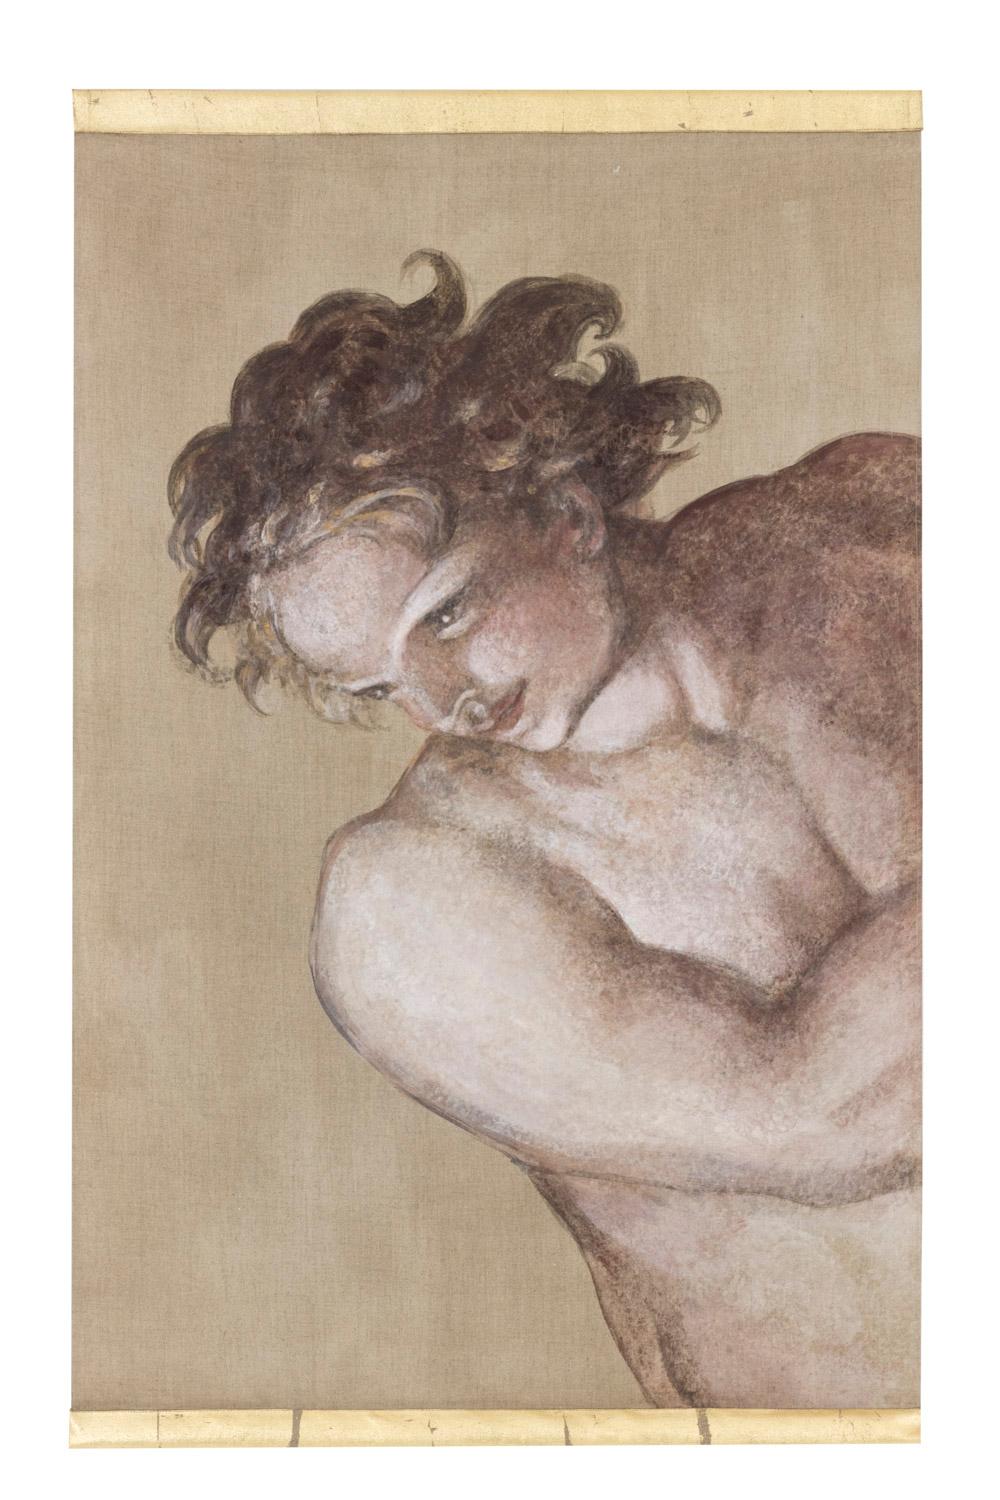 Toile peinte représentant un homme dans le style de Michel-Ange, vue de côté. Il est nu avec des muscles rappelant ceux des tableaux de la Renaissance italienne, il a les cheveux bouclés et tourne la tête vers le bas à gauche. Fond brun.

Toile